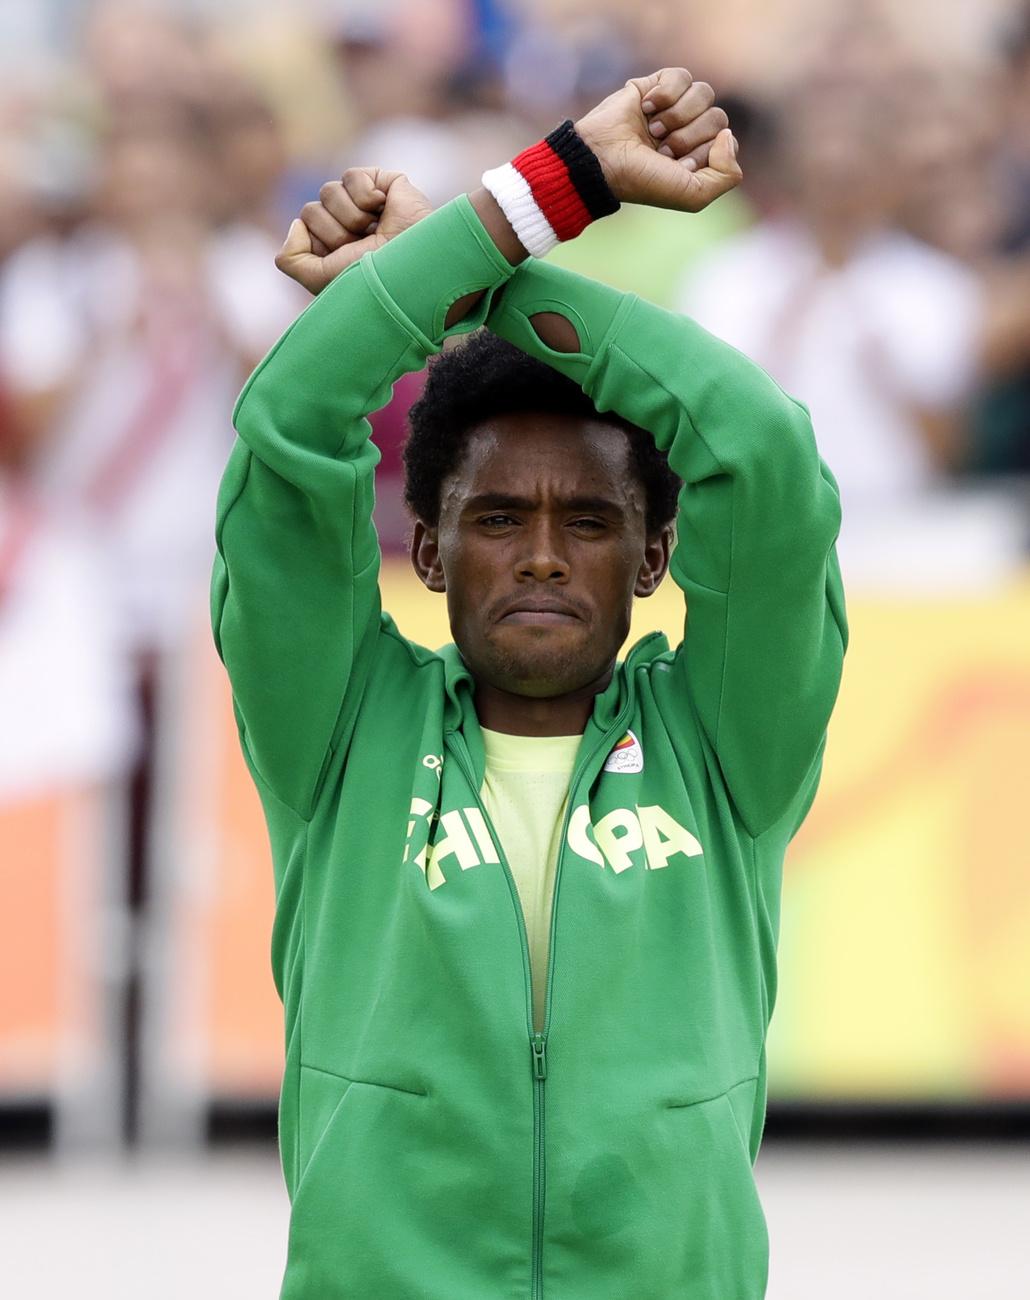 Le médaillé d'argent Feyisa Lilesa, originaire d'Éthiopie, lors d'une cérémonie de remise des prix alors qu'il croise les poignets pour tenter d'attirer l'attention du monde sur les récentes manifestations meurtrières dans sa région natale, Oromia, après le marathon masculin des Jeux olympiques d'été de 2016 à Rio de Janeiro, au Brésil, dimanche 21 août 2016. [KEYSTONE - ROBERT F. BUKATY]